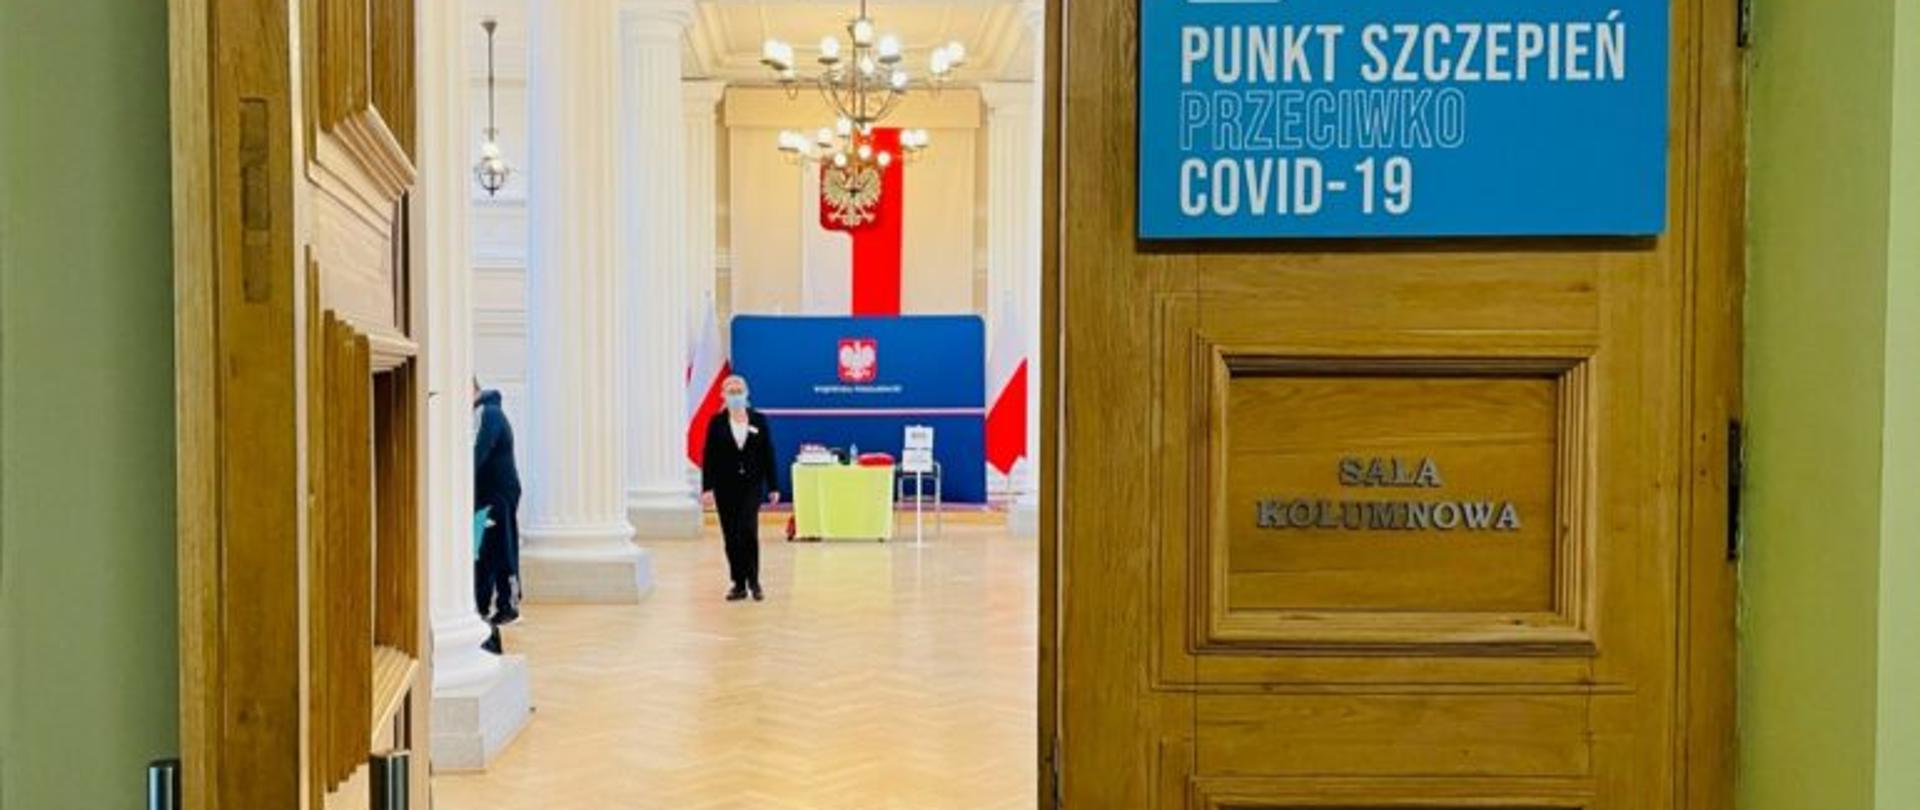 Wejście do sali kolumnowej Podkarpackiego Urzędu Wojewódzkiego w Rzeszowie. Na drzwiach niebieska tablica z napisem: Punkt szczepień przeciwko COVID-19. W tle wnętrze sali kolumnowej i kobieta w maseczce